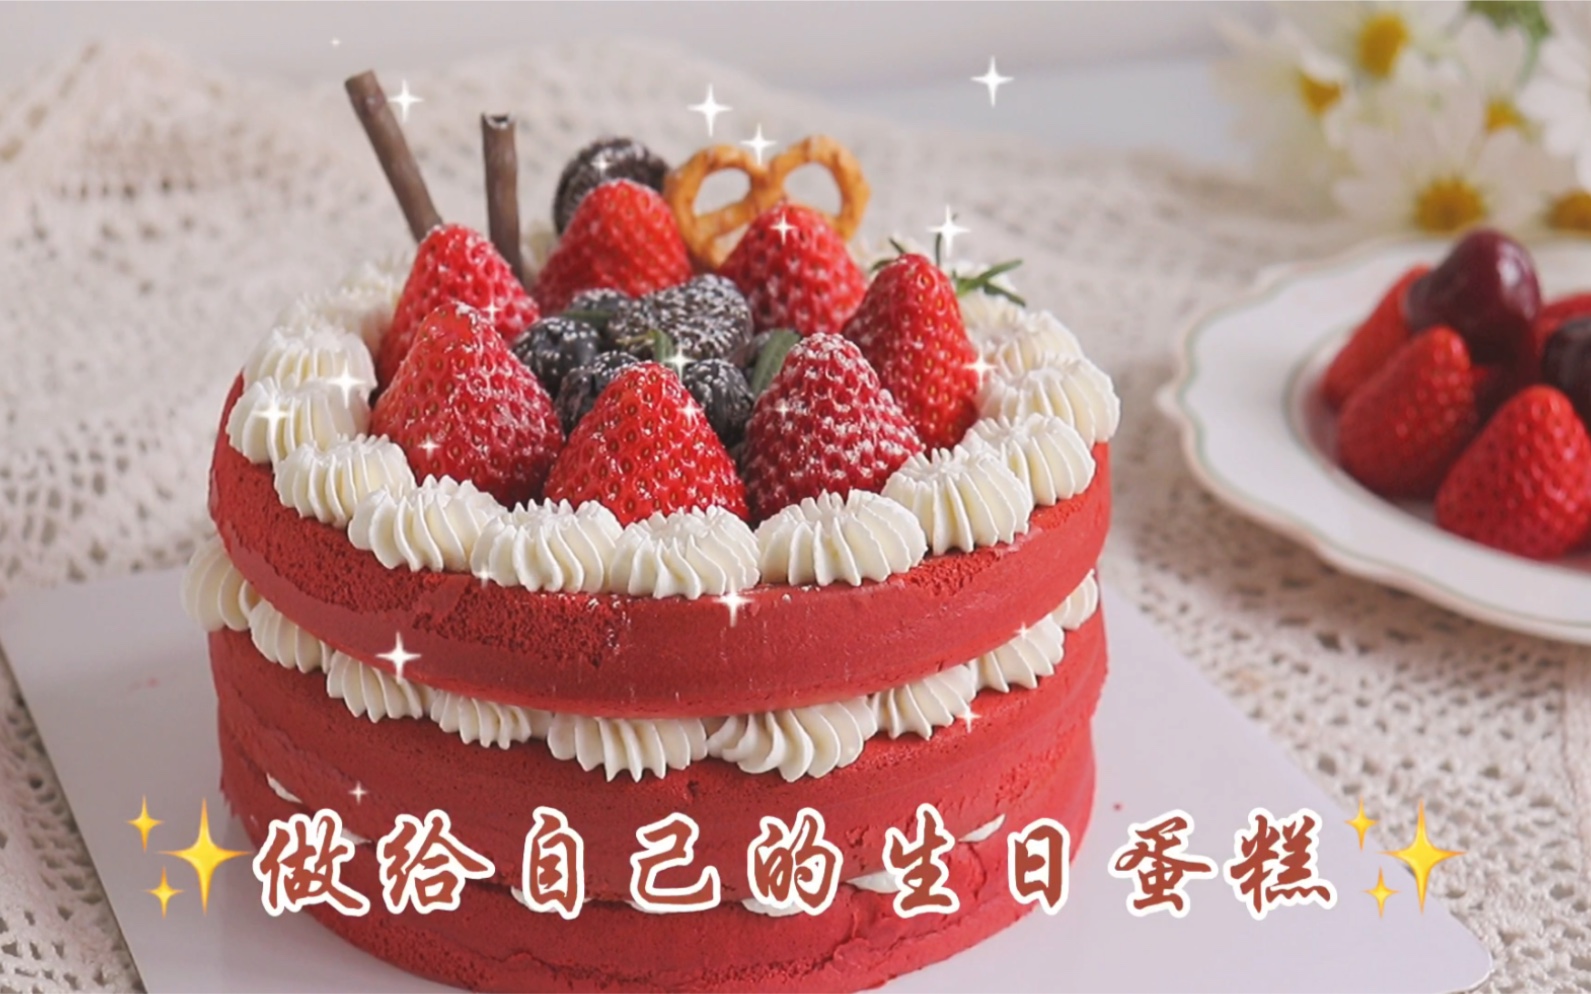 数字38岁生日蛋糕图片